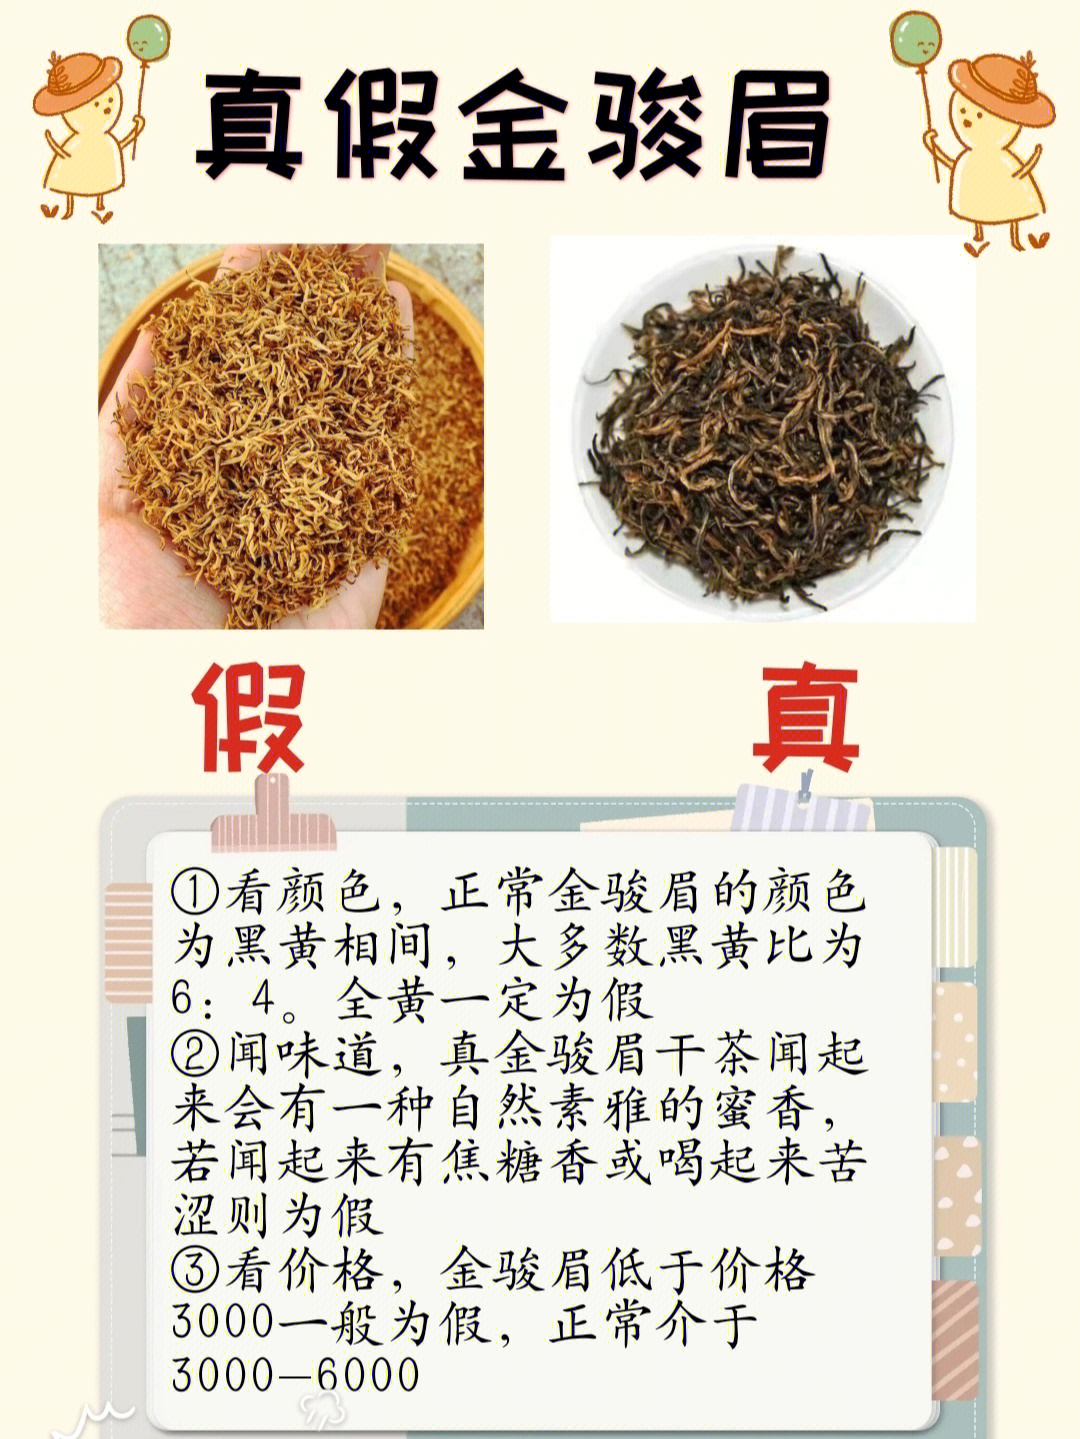 金骏眉属于红茶中正山小种的分支,金骏眉之所以名贵,是因为全程都由